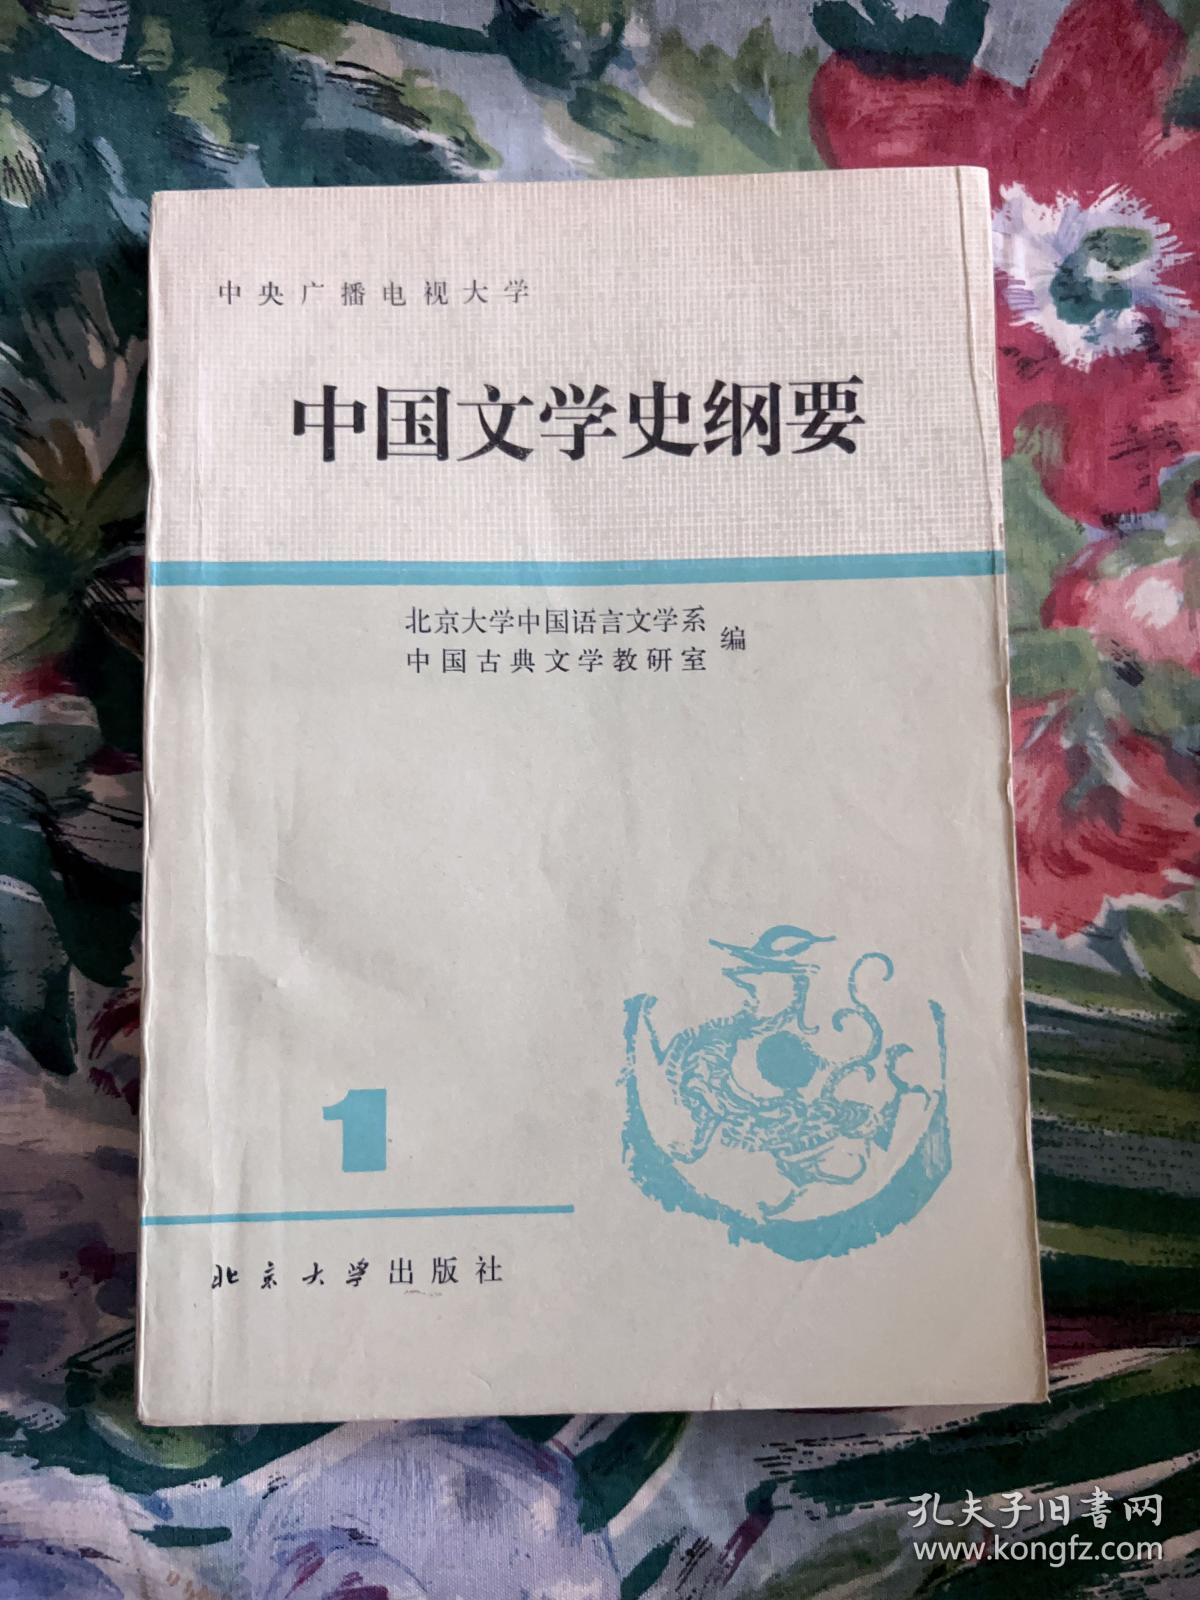 中国文学史纲要 1